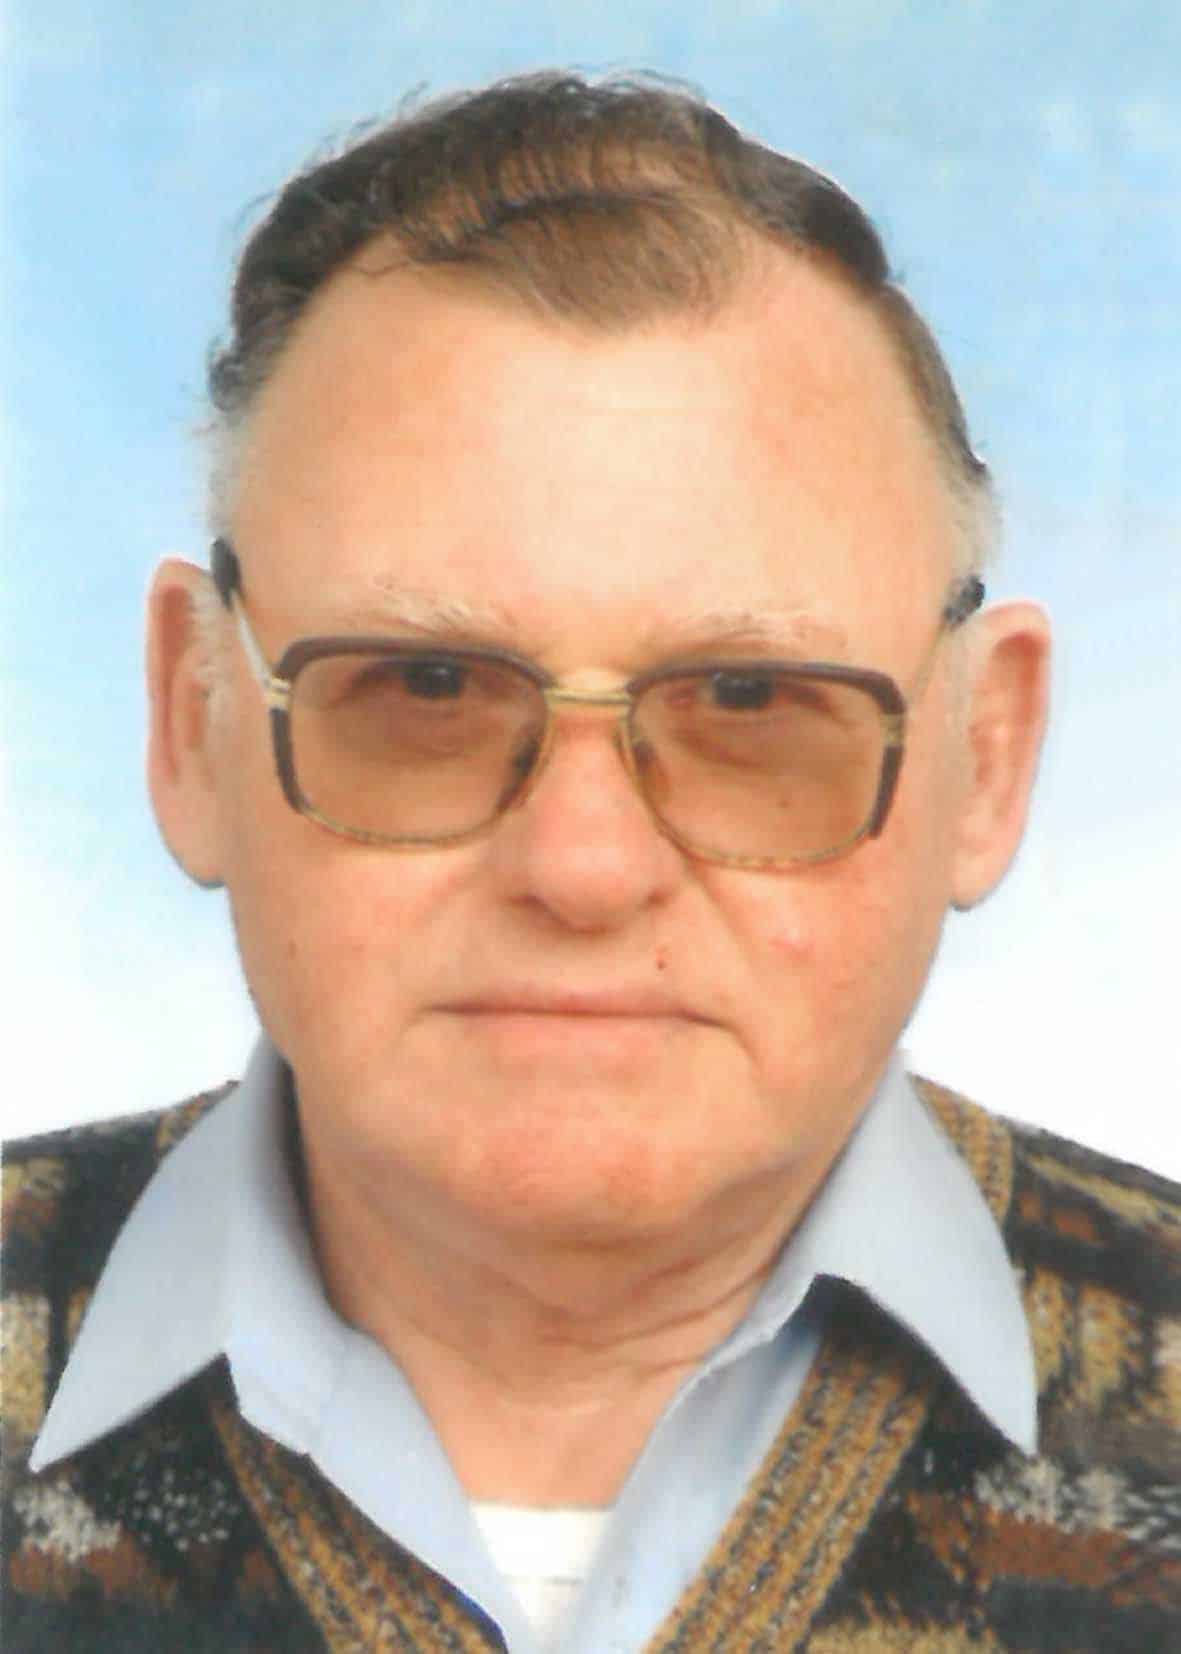 August Fischer (88)